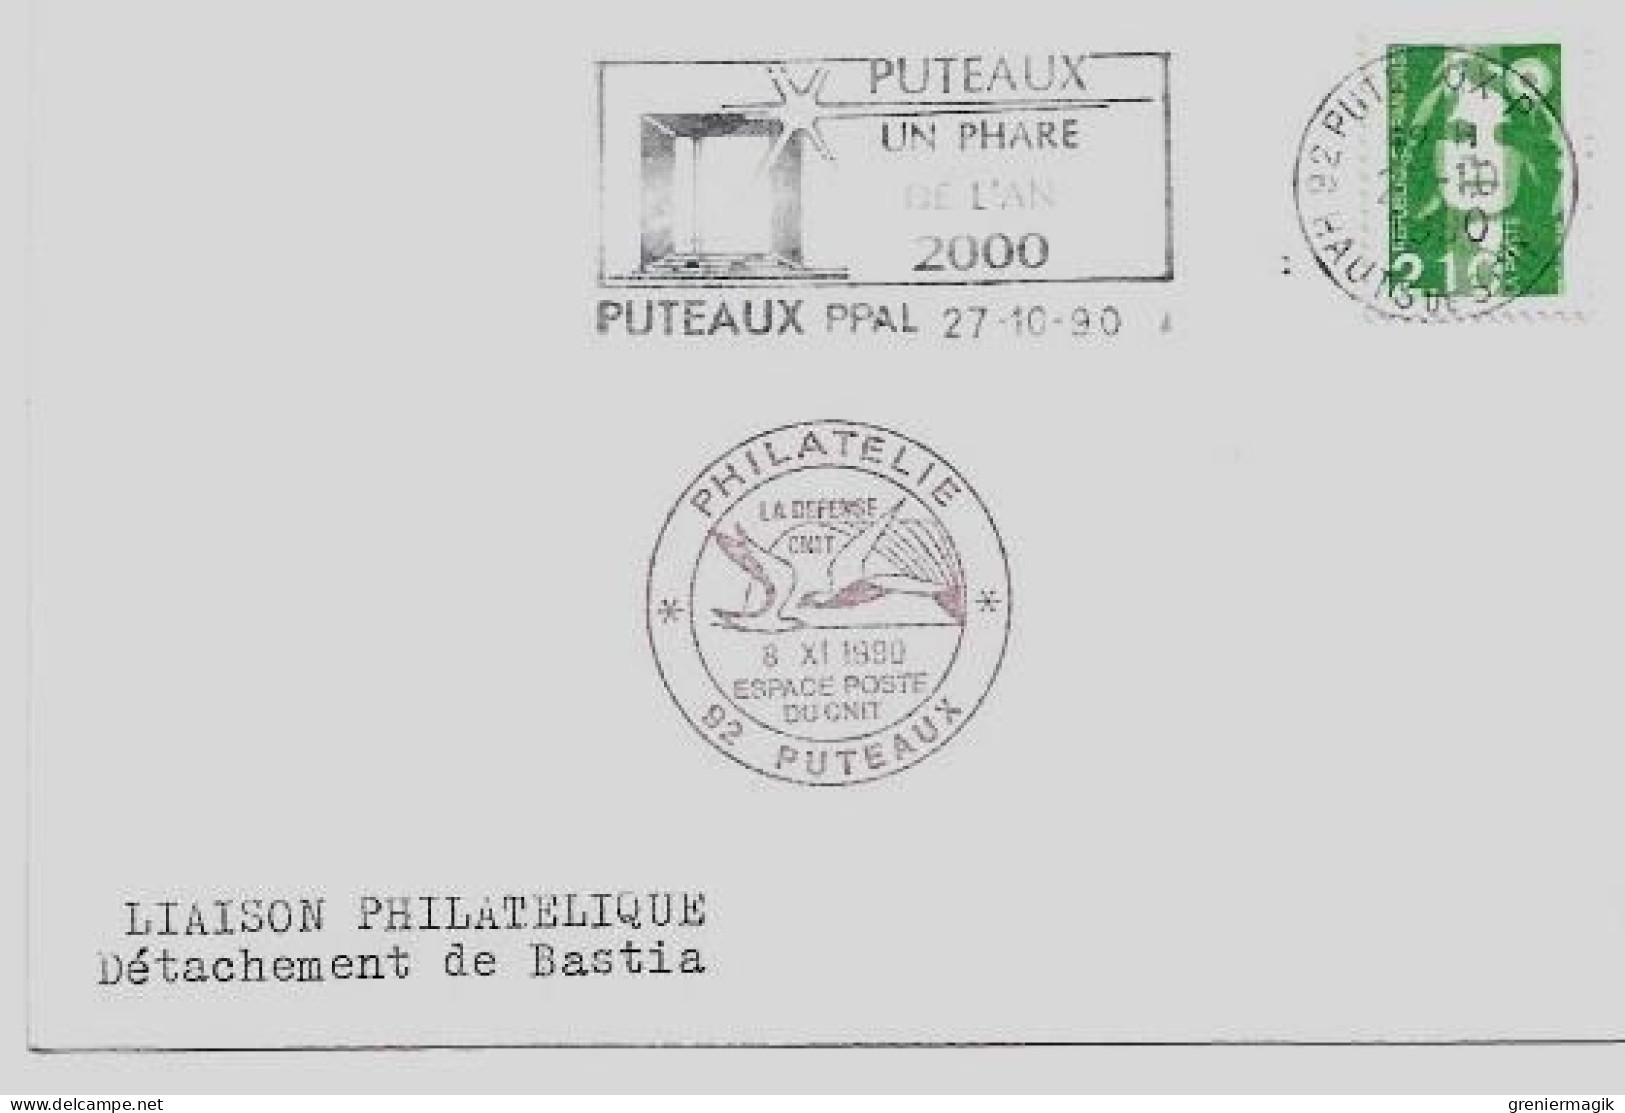 N°2484 Cachet Temporaire Philatélie Espace Poste Du CNIT Puteaux 1990 - Phare De L'an 2000 - Liaison Philatélique Bastia - Aushilfsstempel